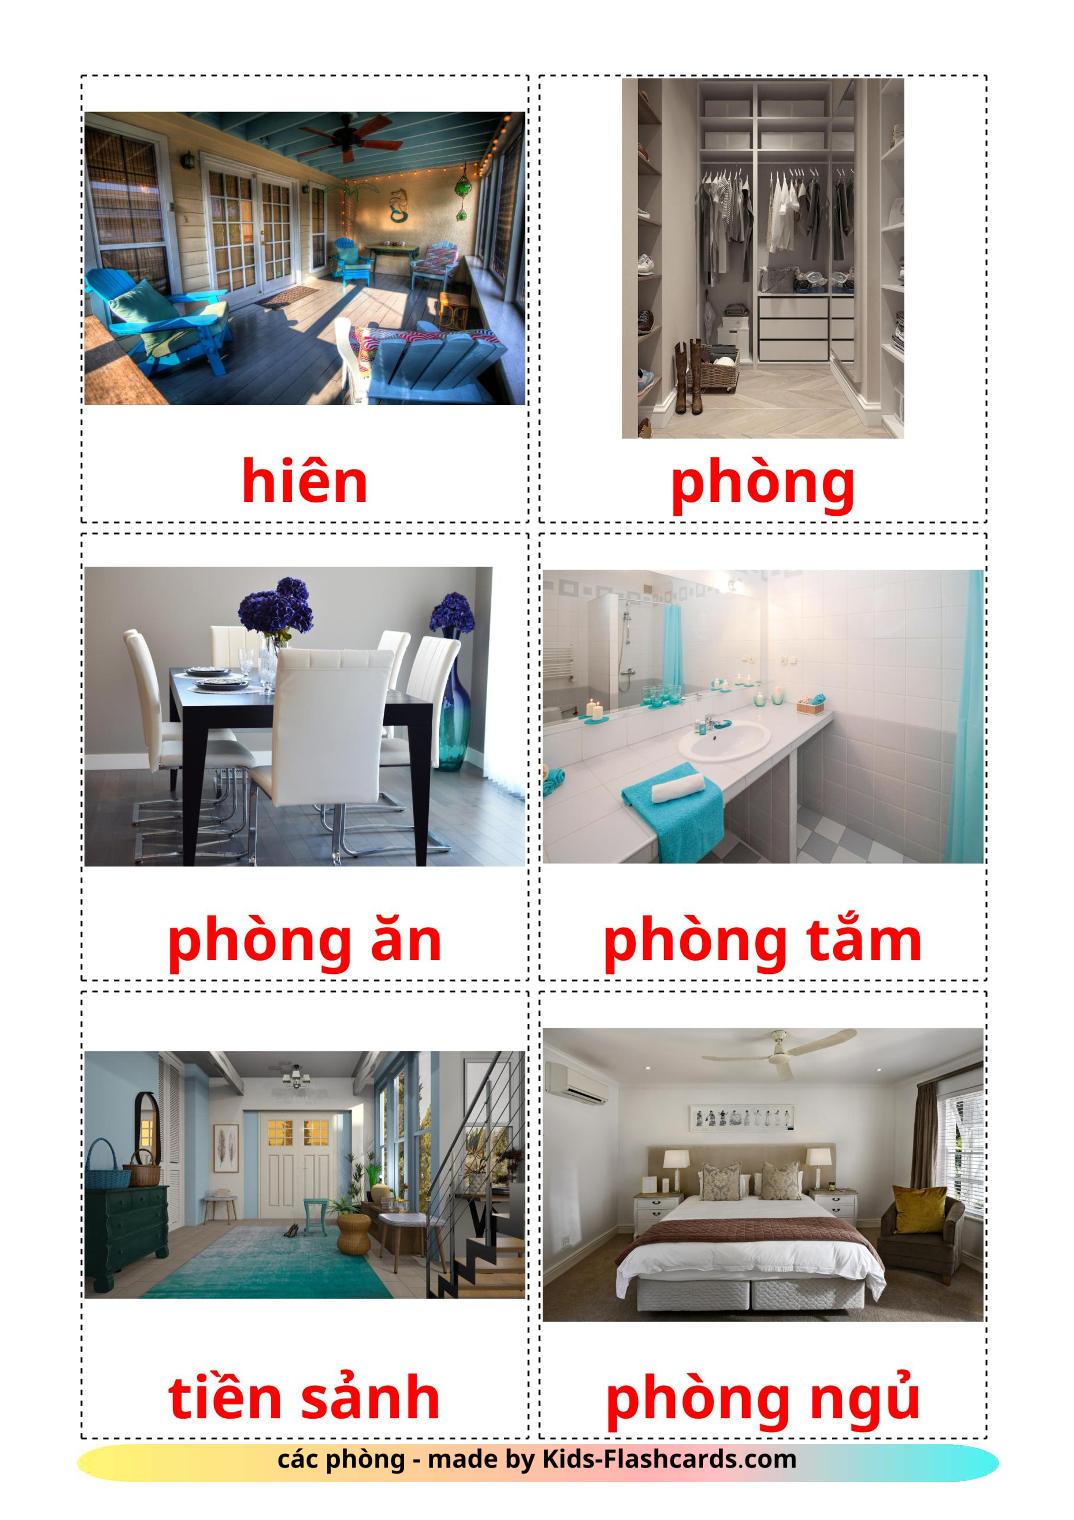 Habitaciones  - 17 fichas de vietnamita para imprimir gratis 